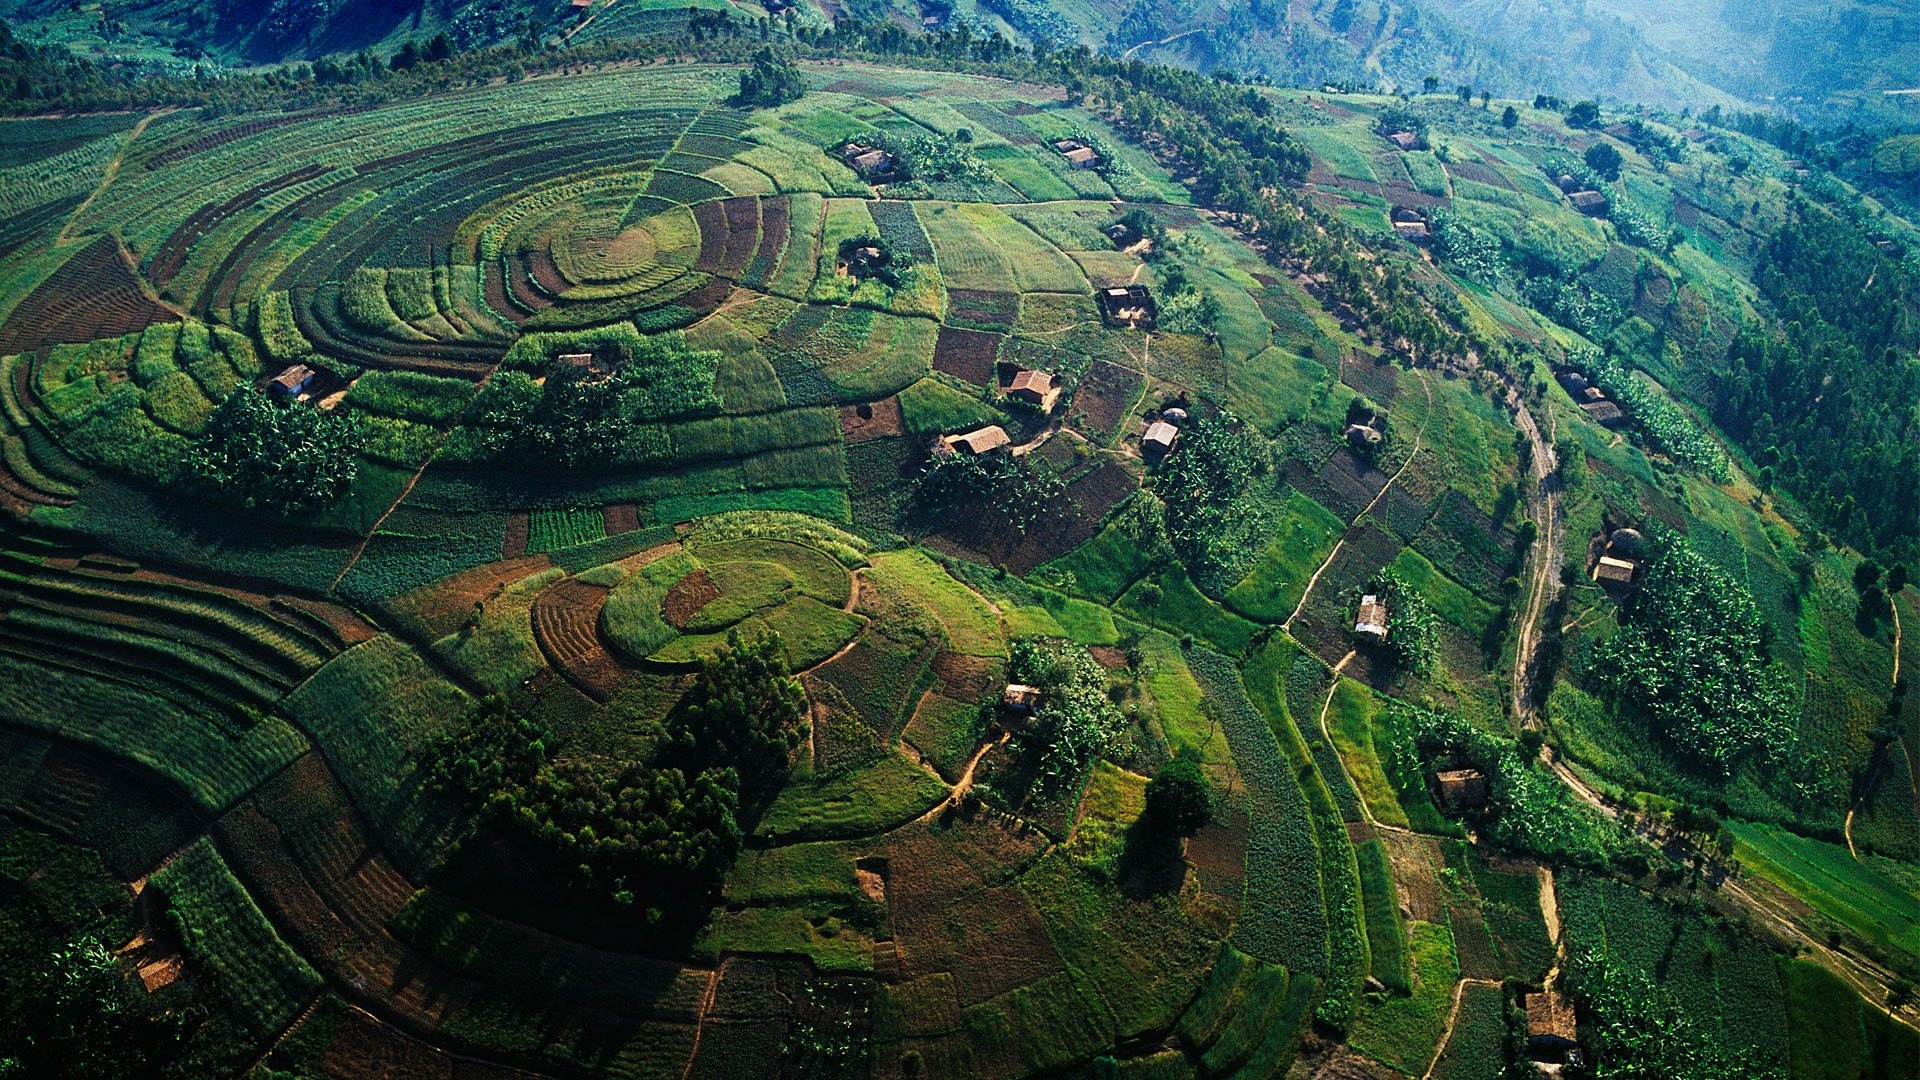 Uganda travels, Wallpapers, Popular destinations, Incredible landscapes, 1920x1080 Full HD Desktop